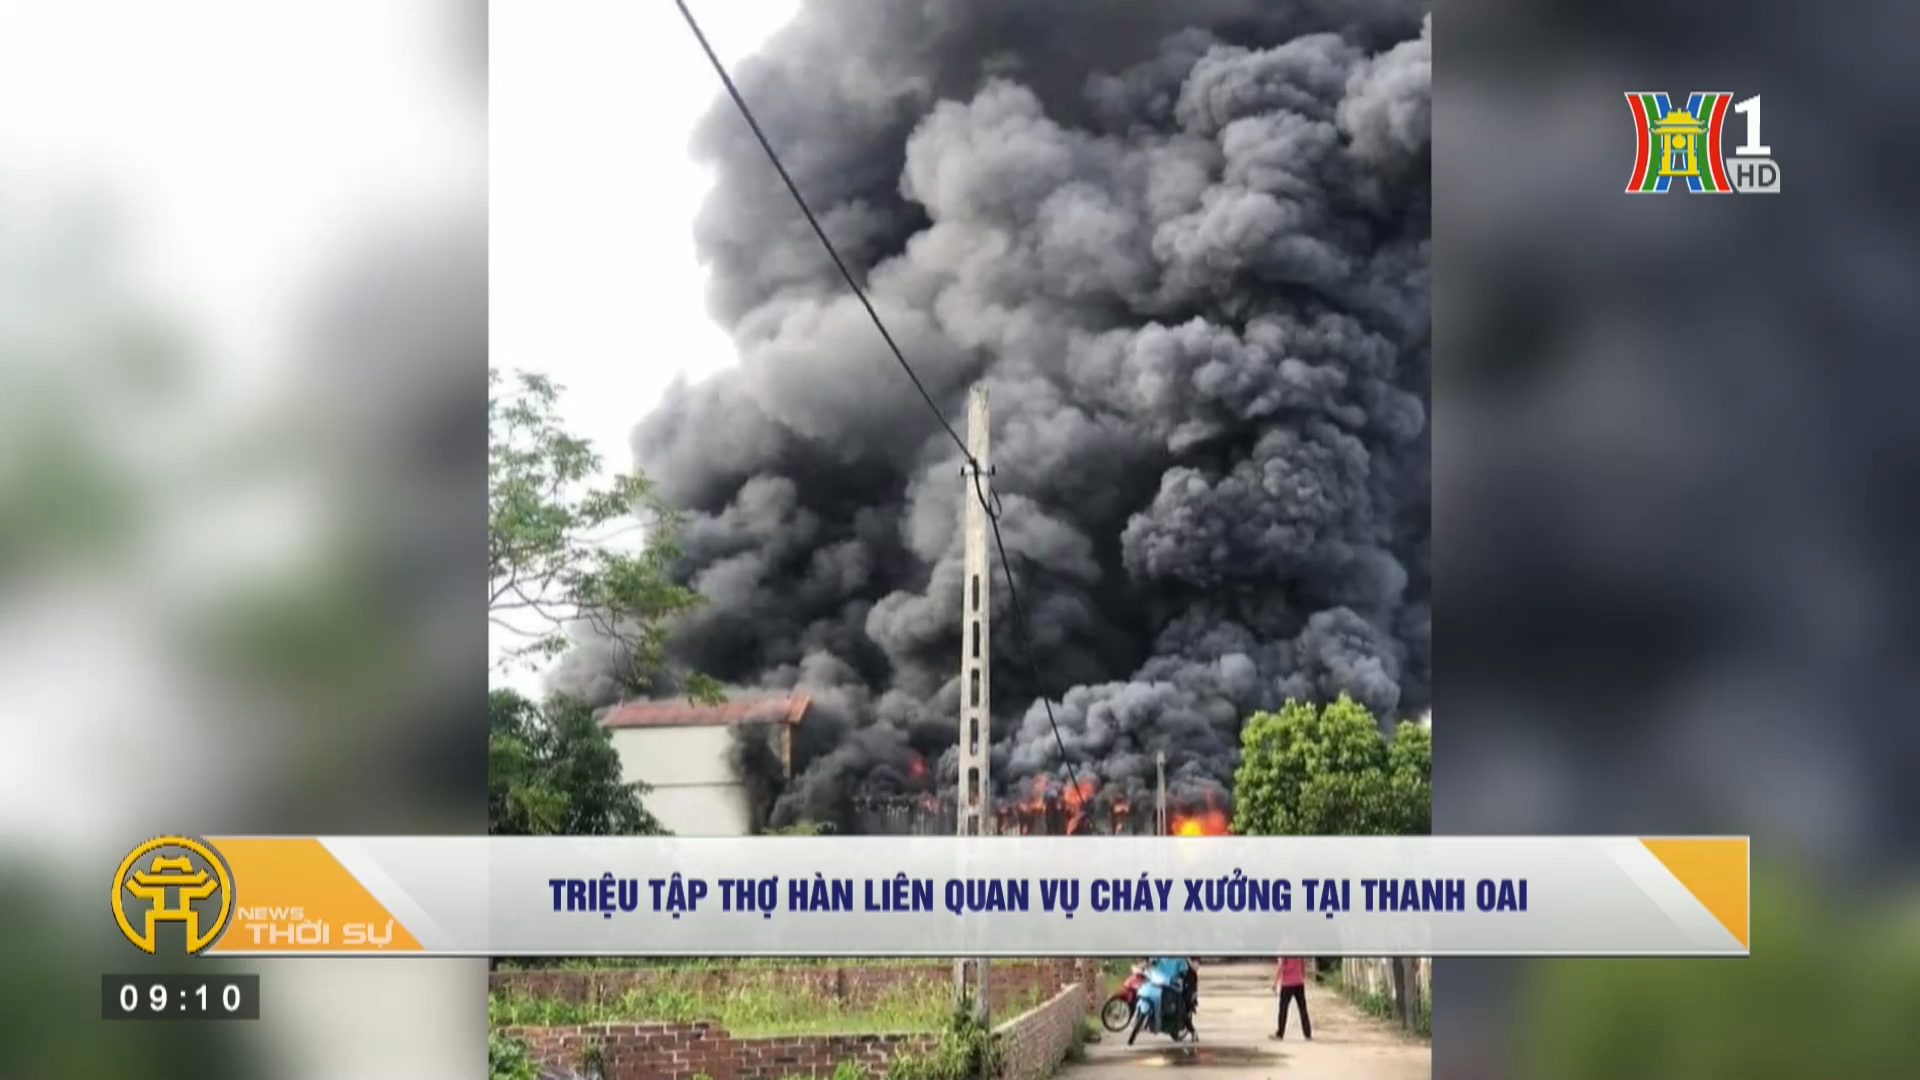 Triệu tập thợ hàn liên quan vụ cháy xưởng tại Thanh Oai